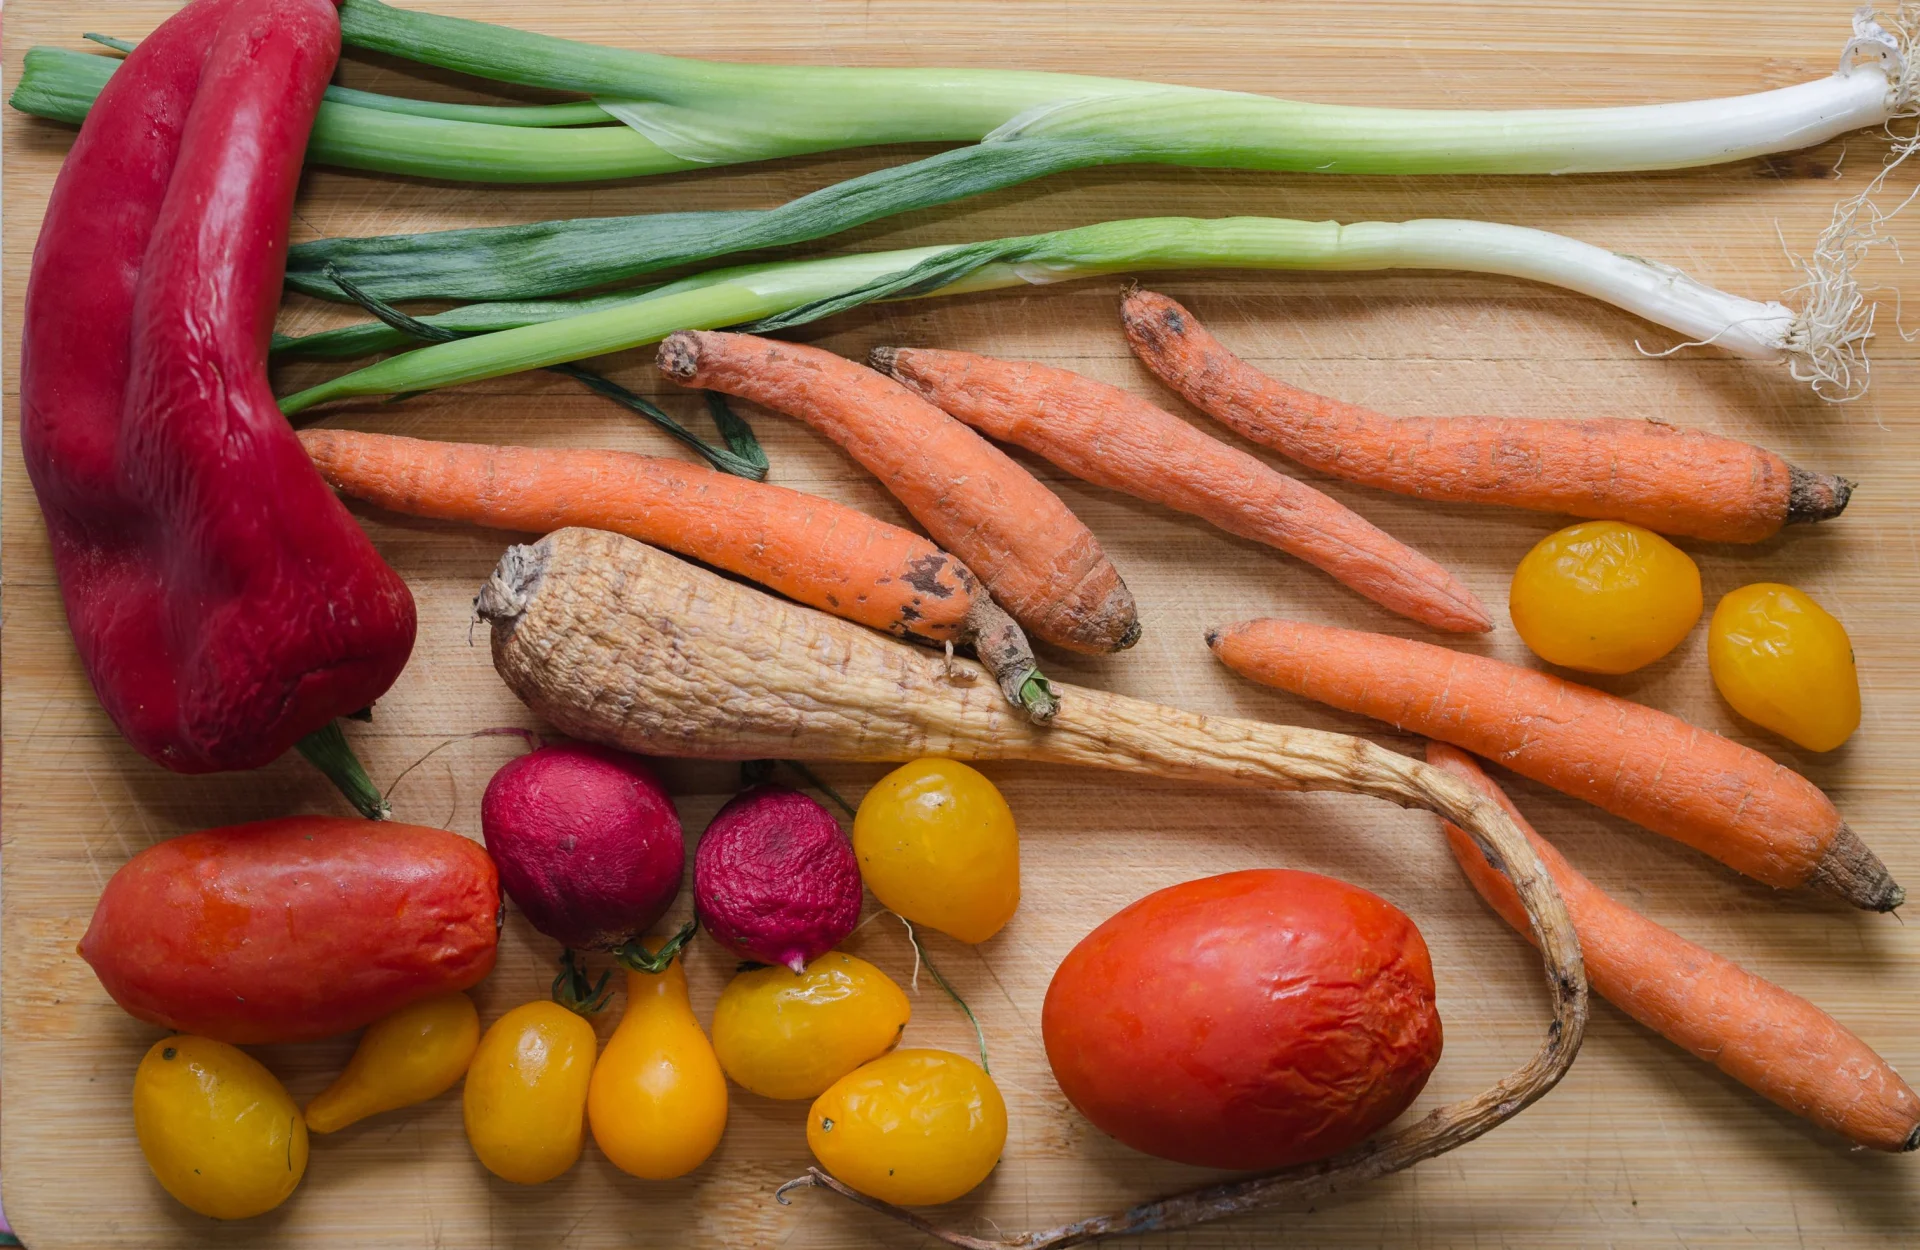 Verdure avvizzite come carote, porri, peperoni e pomodori giacciono su un tavolo